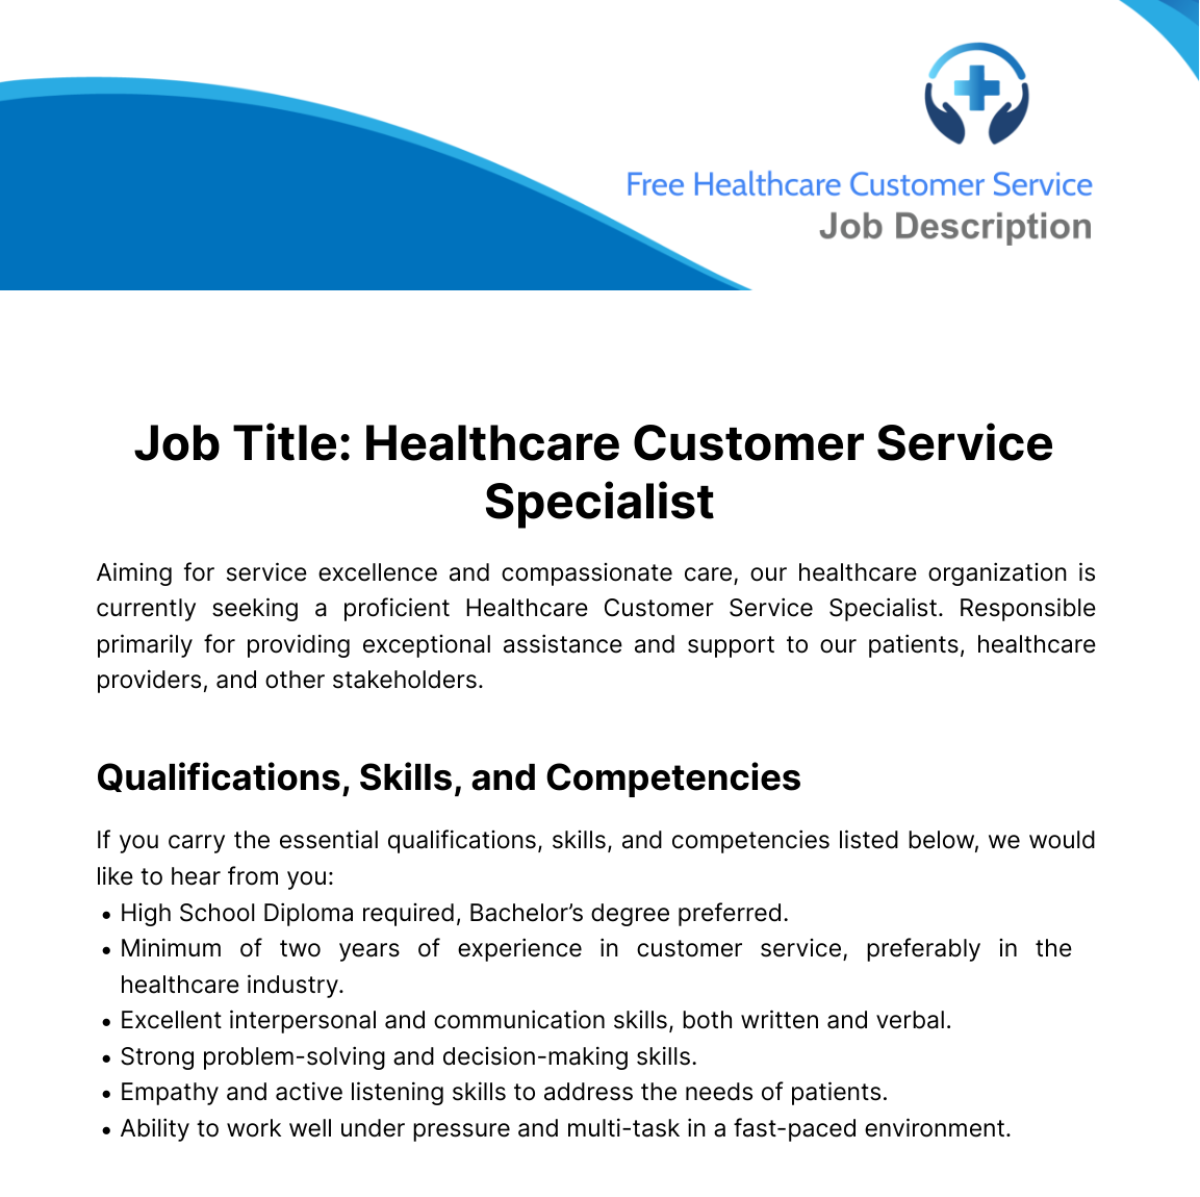 Healthcare Customer Service Job Description Template